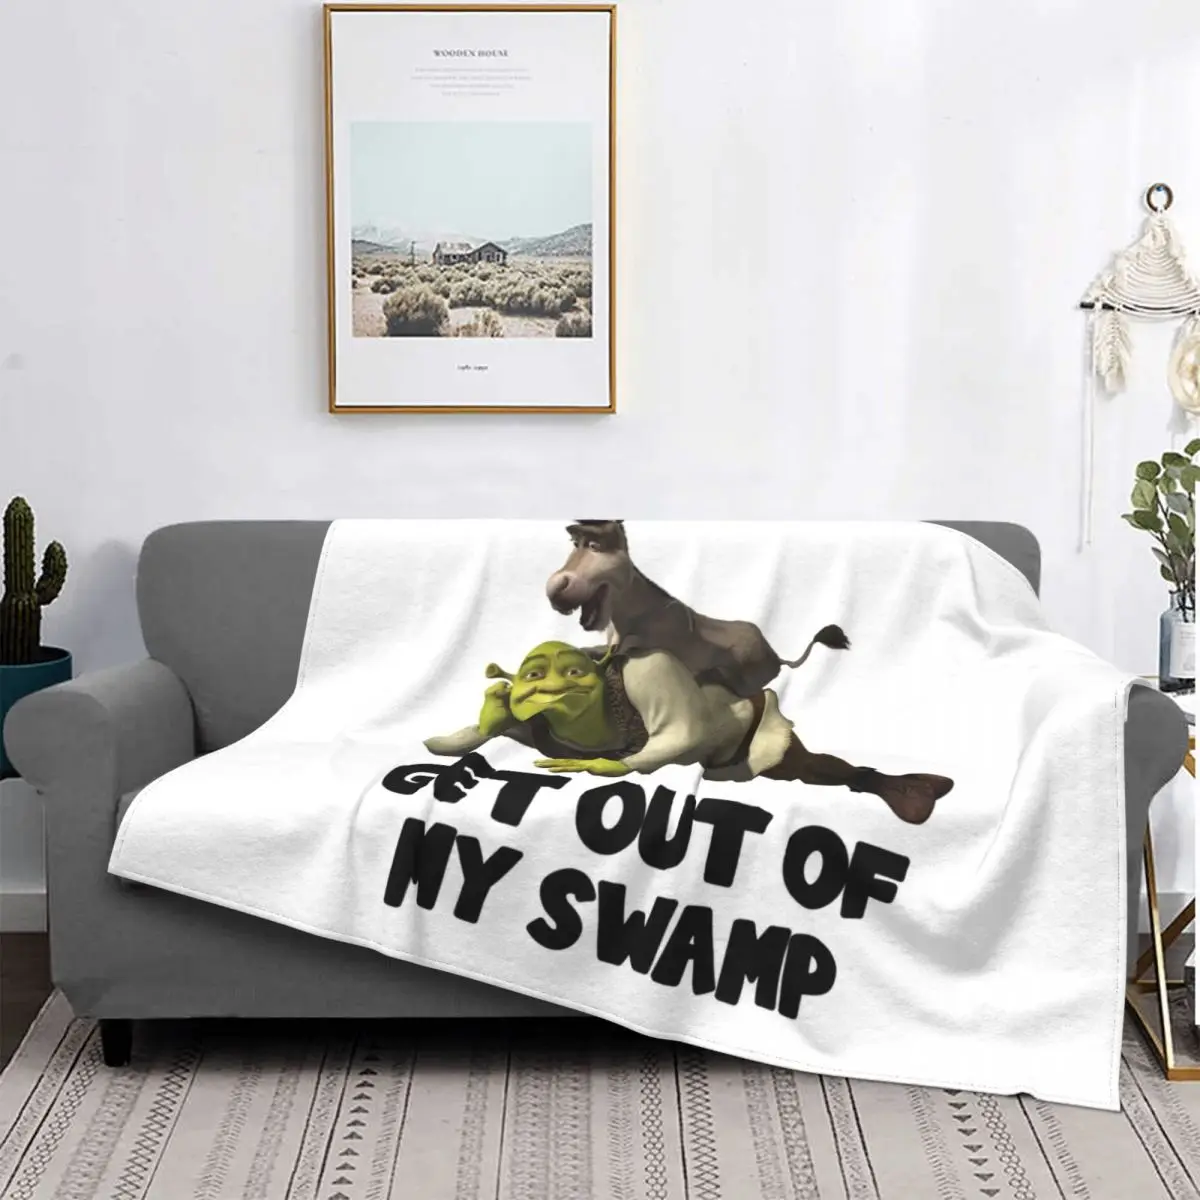 

Get Out Of My Swamp Shrek Velvet Throw Blanket Blankets for Home Bedroom Soft Quilt